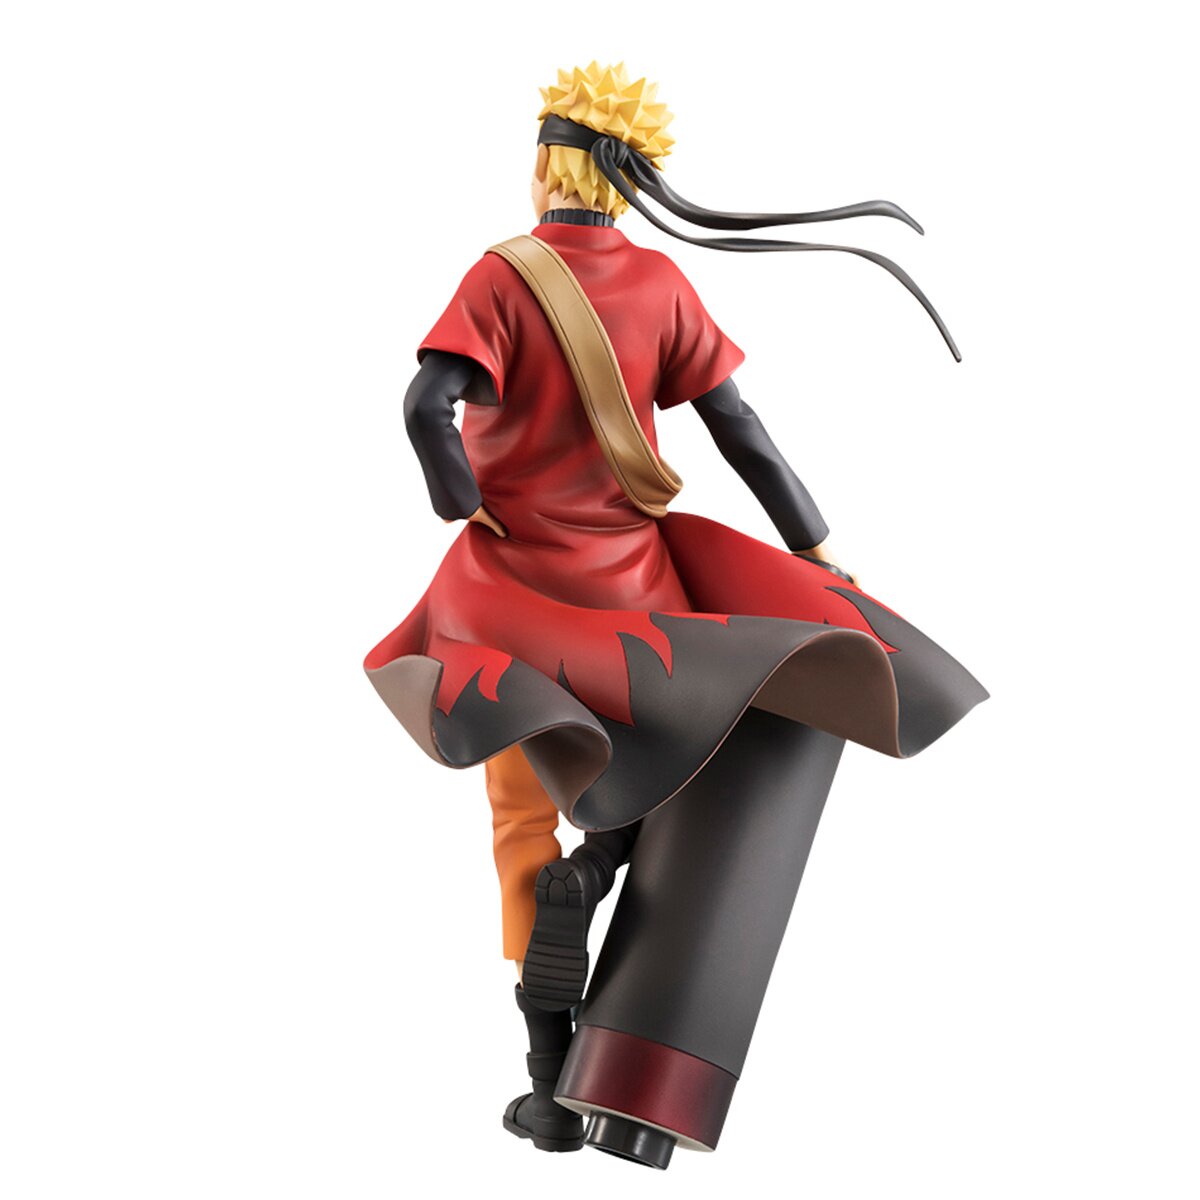 G.E.M. [Naruto] Sage Mode Figure: Megahouse - Tokyo Otaku Mode (TOM)